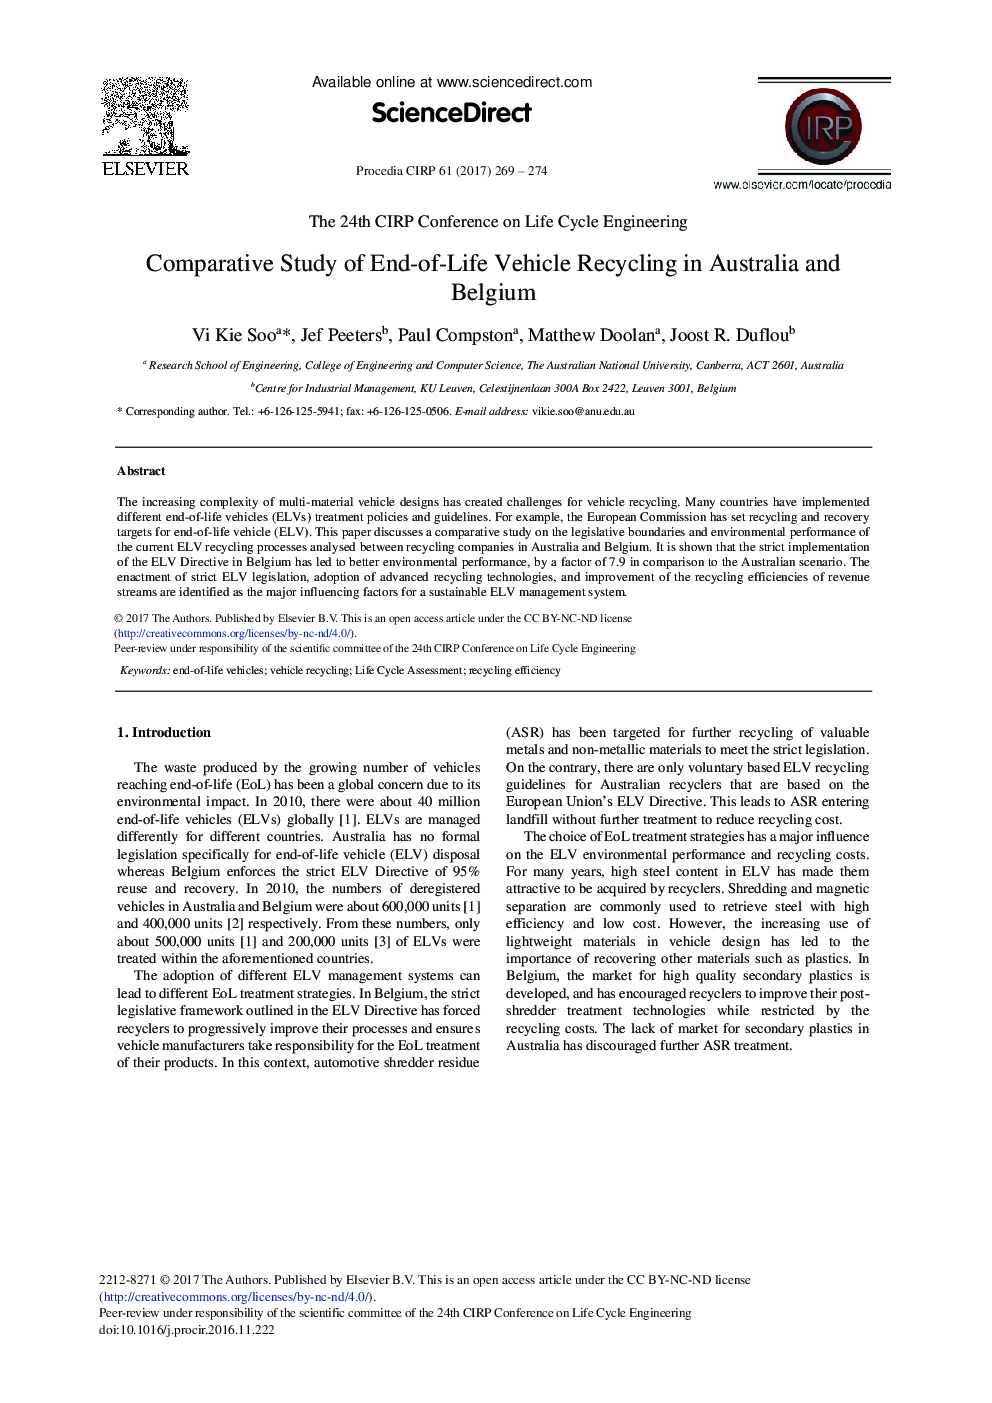 بررسی مقایسه ای از بازیافت وسیله نقلیه در استرالیا و بلژیک 